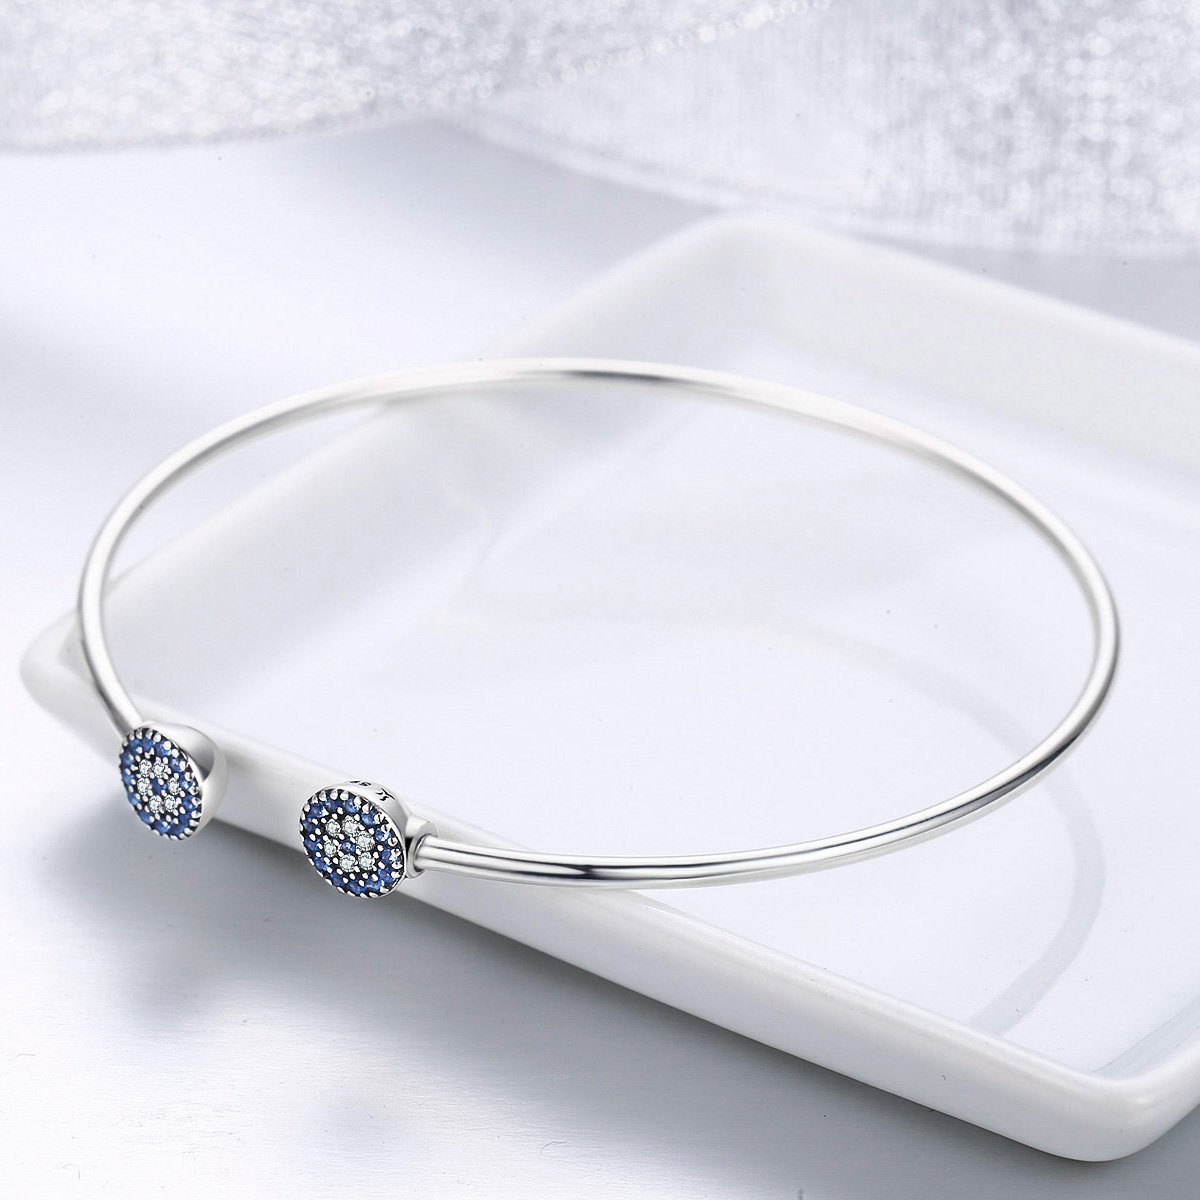 Blue Eyes Open Cuff 925 Sterling Silver Bracelet - Aisllin Jewelry